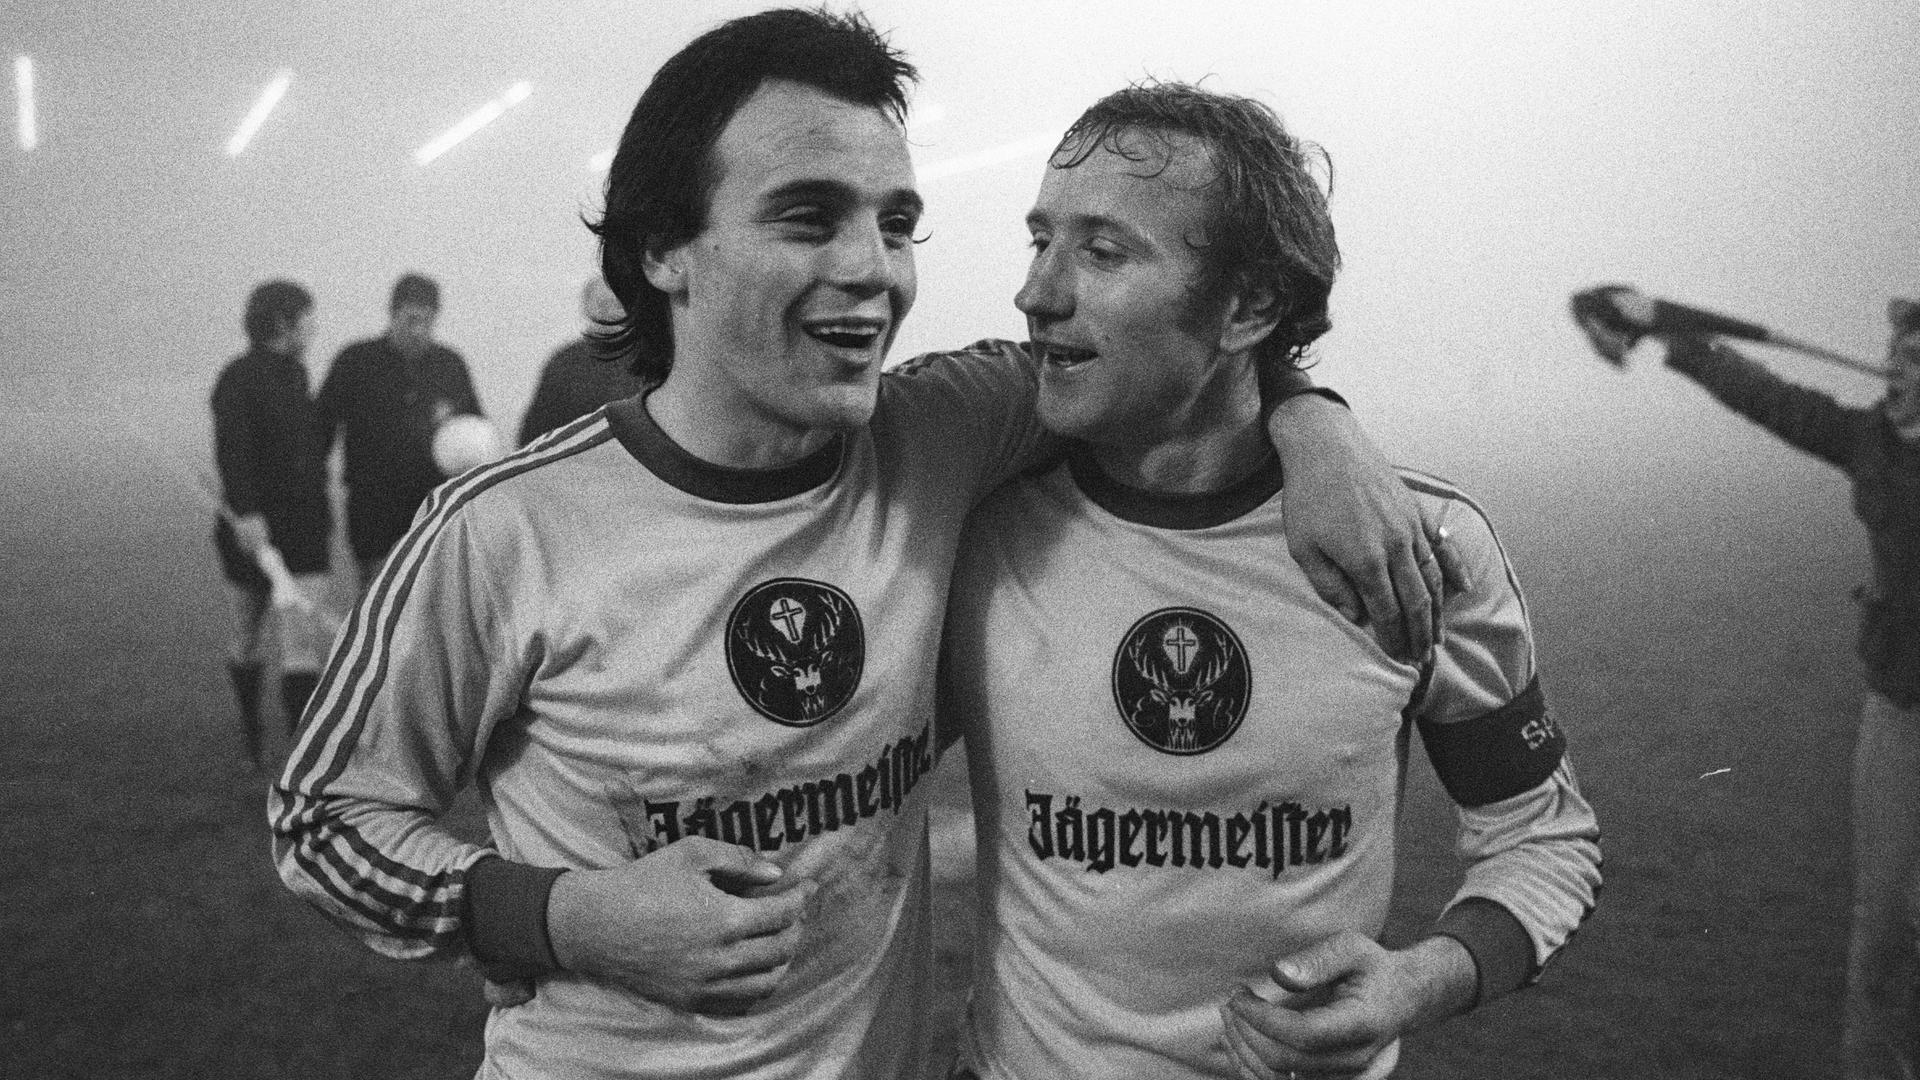 Die beiden Spieler von Eintracht Braunschweig, Wolfgang Frank (links) und Wolfgang Grzyb, in Trikots mit Jägermeister-Werbung